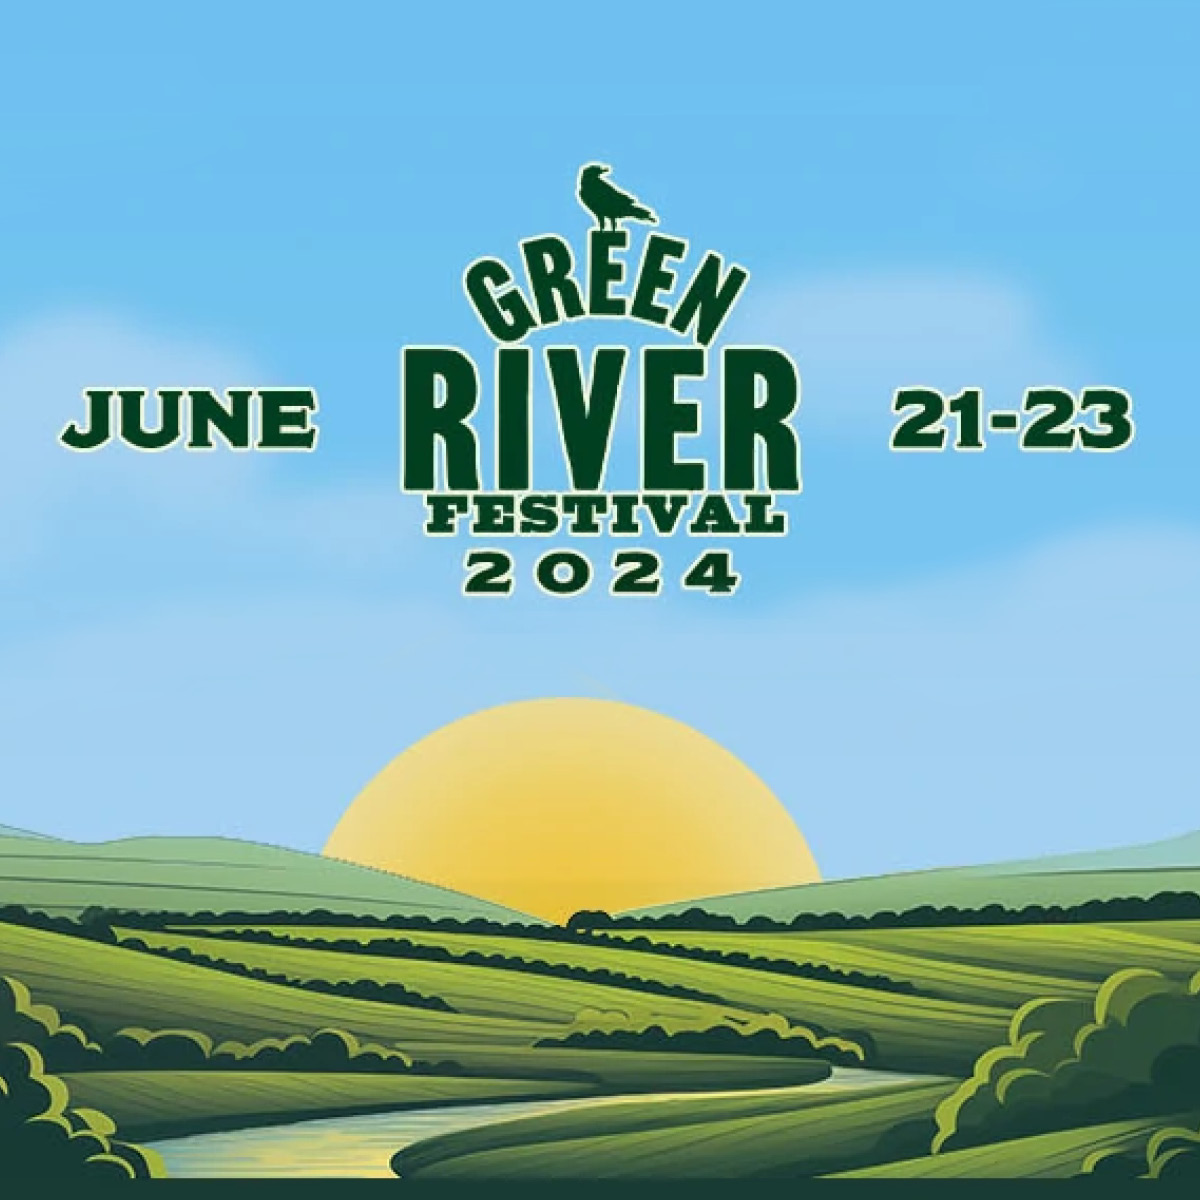 June 21 to 23, 2024 Green River Festival logo